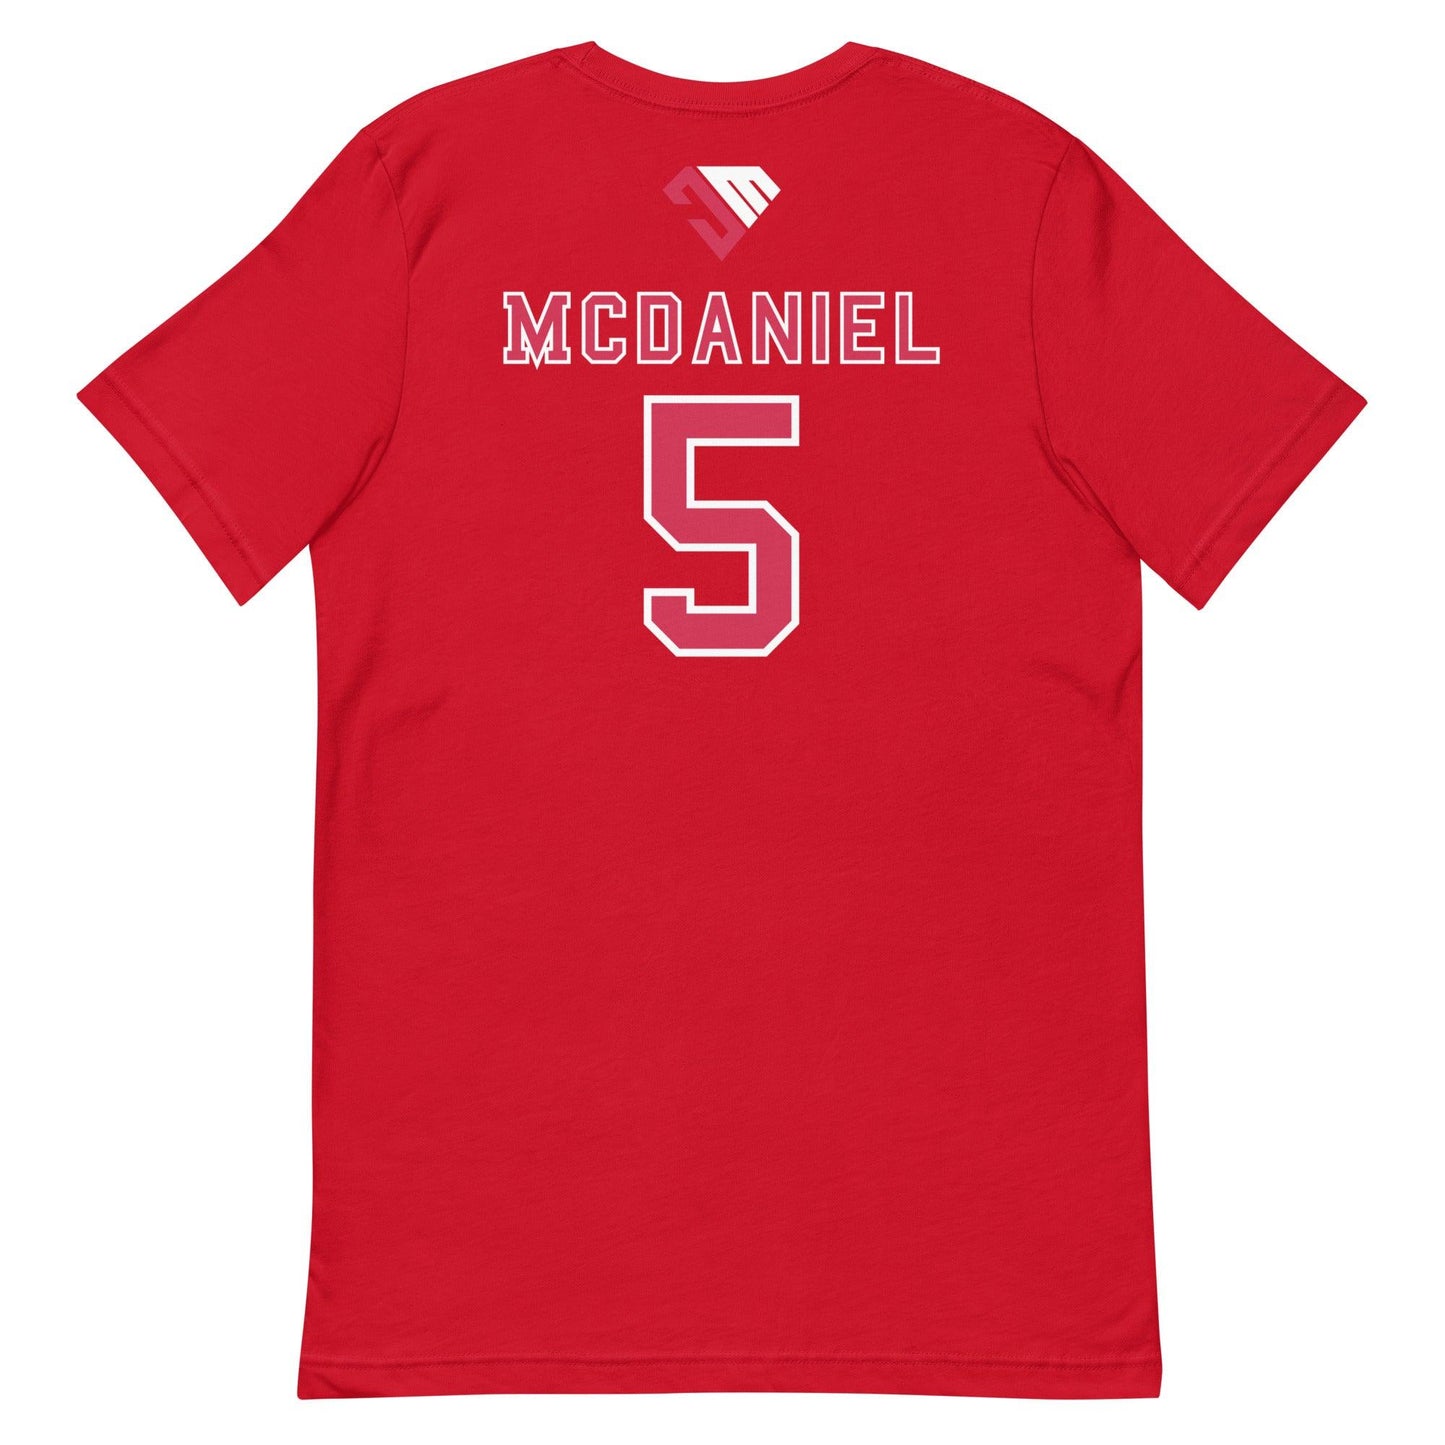 Jaylon Mcdaniel "Jersey" t-shirt - Fan Arch